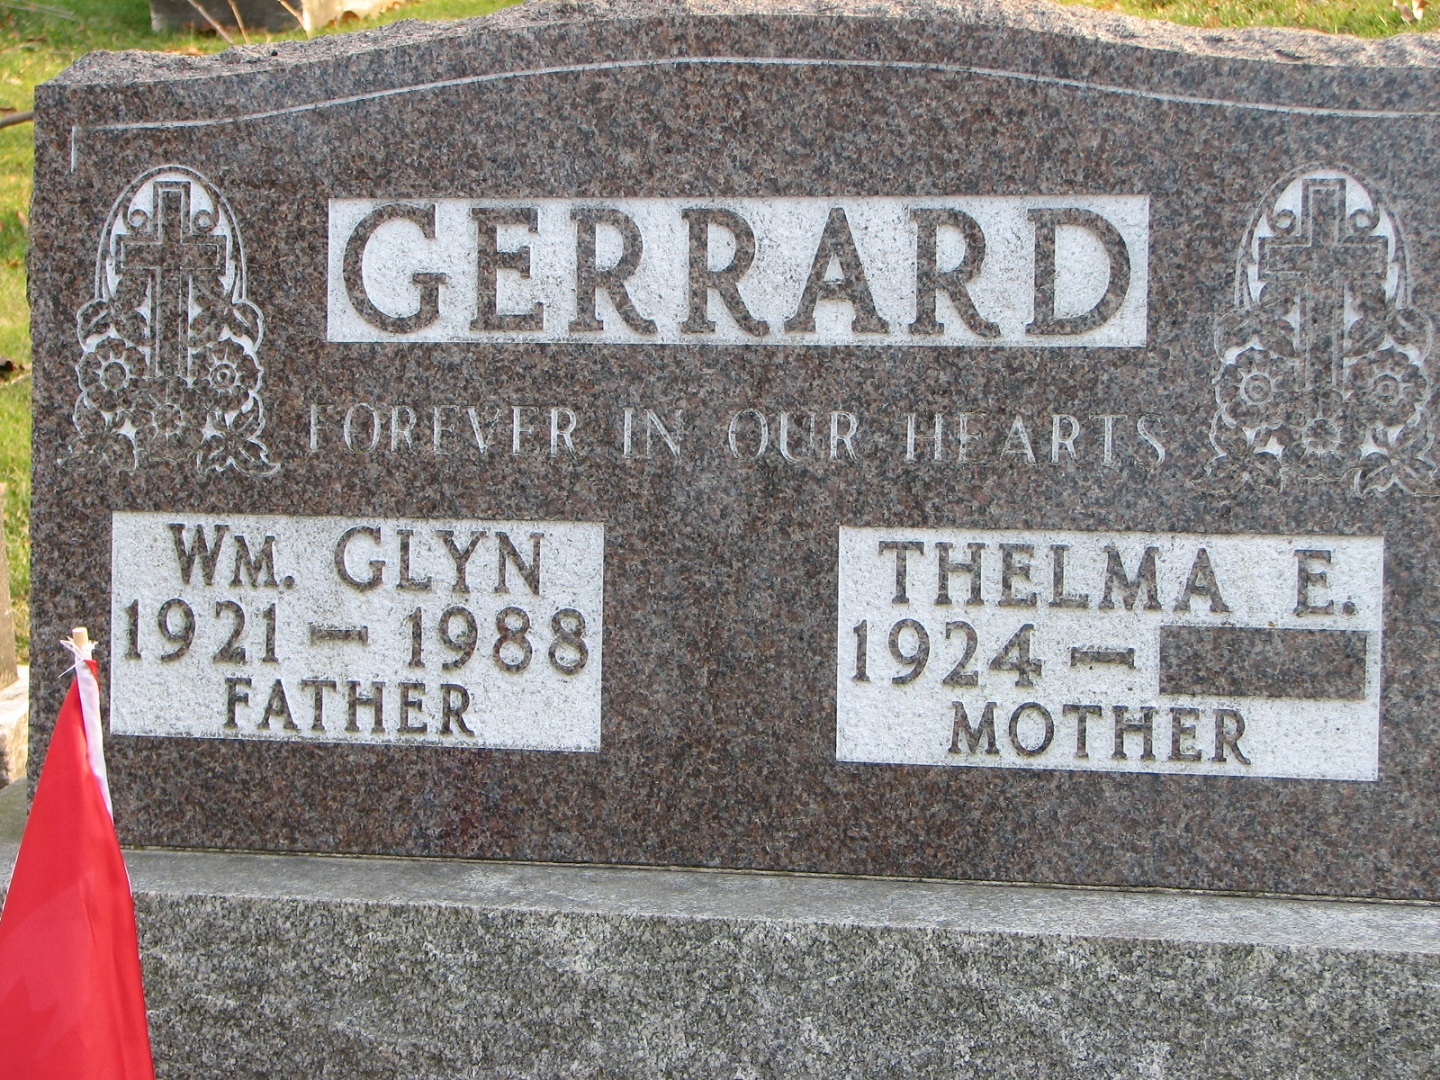 GERRARD Wm Glyn 1921-1988_ Thelma E 1924-